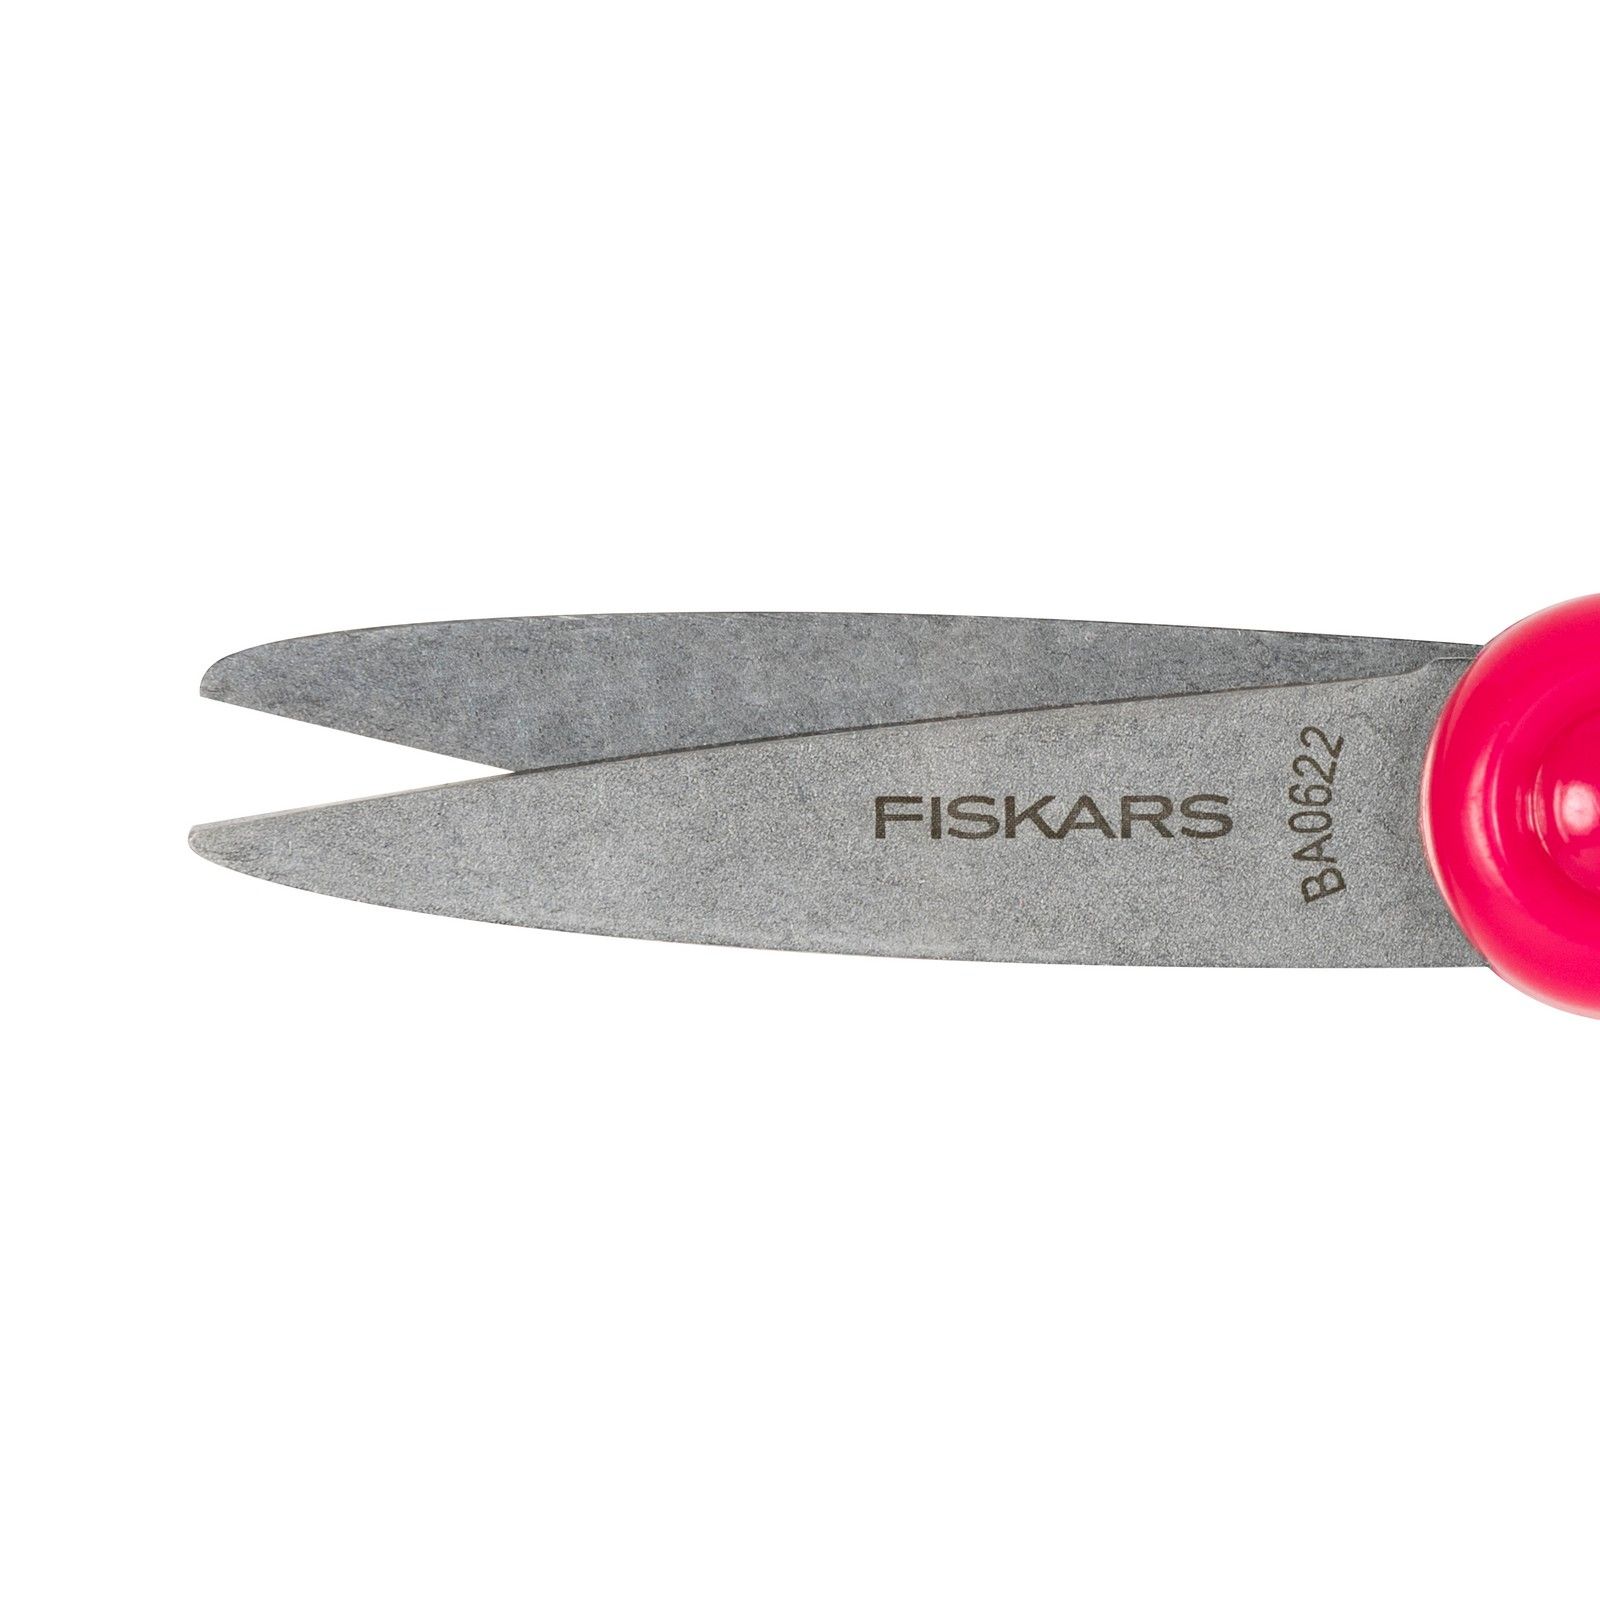 Fiskars Big Kids Scissors